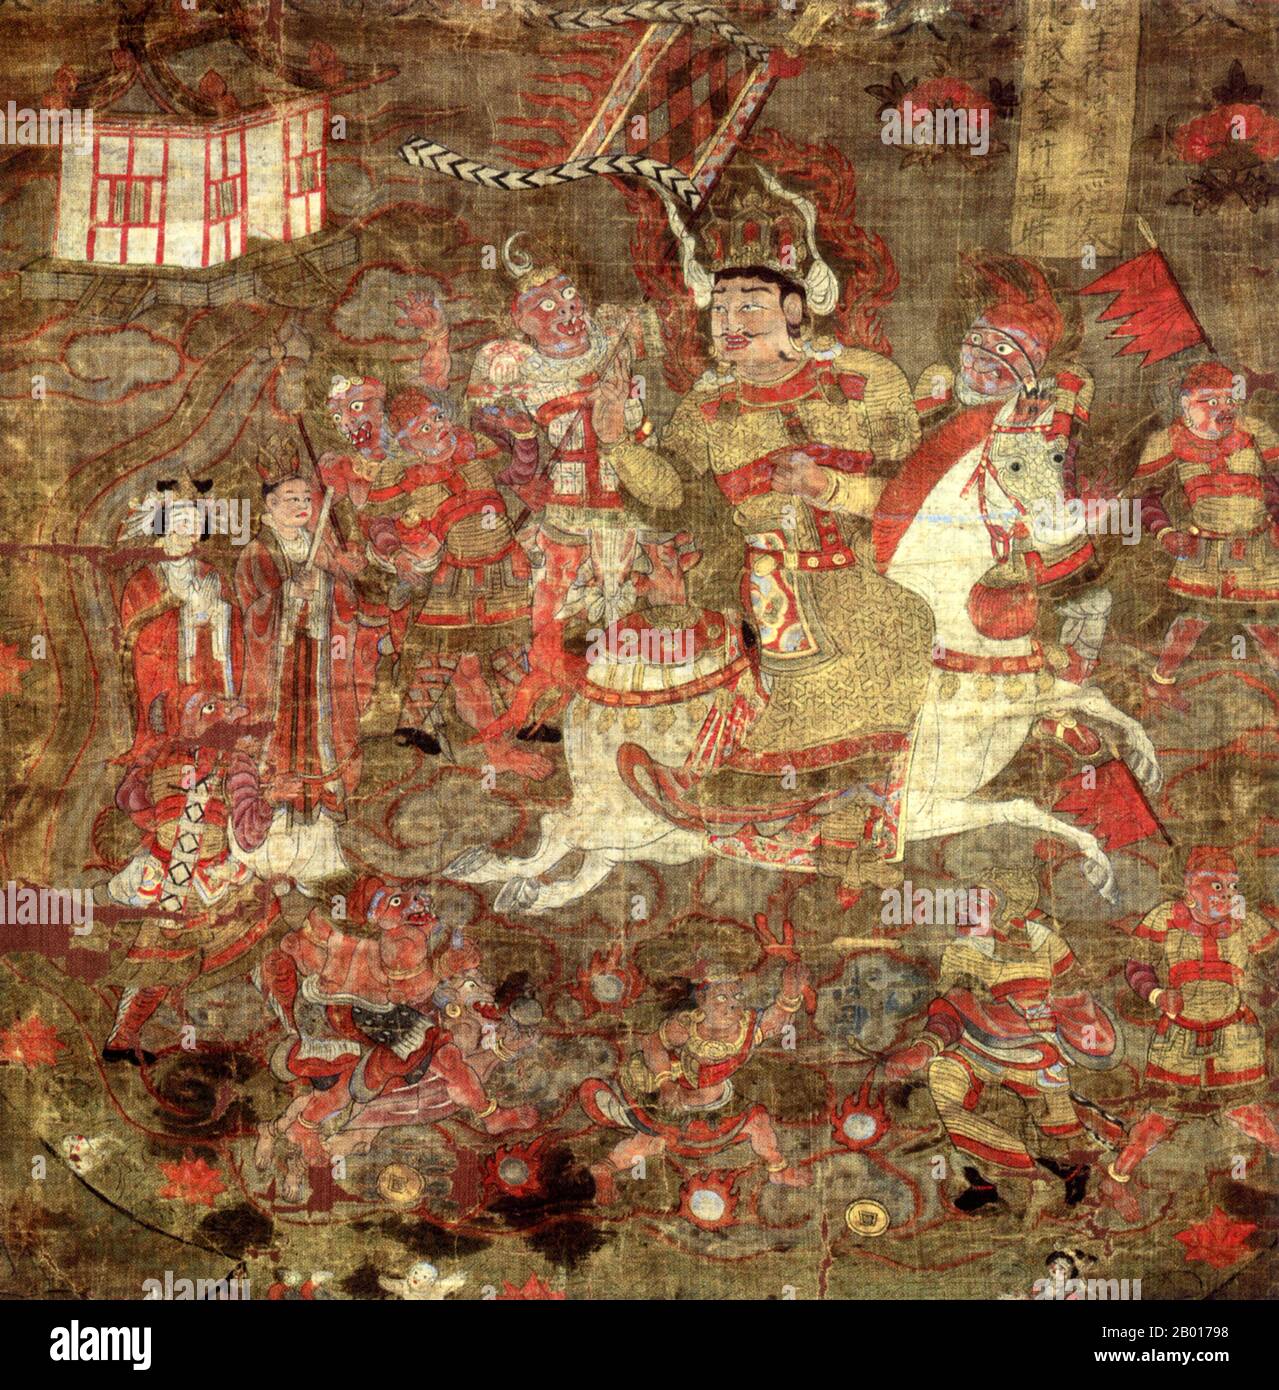 China: Vaisravana, uno de los cuatro reyes budistas guardianes. Cuadro de volutas colgantes, cuevas de Mogao, Dunhuang, 9th-8th siglo. Vaisravaṇa (Sánscrito) o Vessavaṇa (Pali) también conocido como Jambhala en Tibet y Bishamonten en Japón es el nombre del jefe de los cuatro Reyes Celestiales y una figura importante en la mitología budista. Aquí está representado montando a través del mar. Los reyes de la era budista de Khotan reclamaron su descendencia de Vaisravana, quien se dice que vino a vivir en el oasis cuando era sólo un desierto. Foto de stock